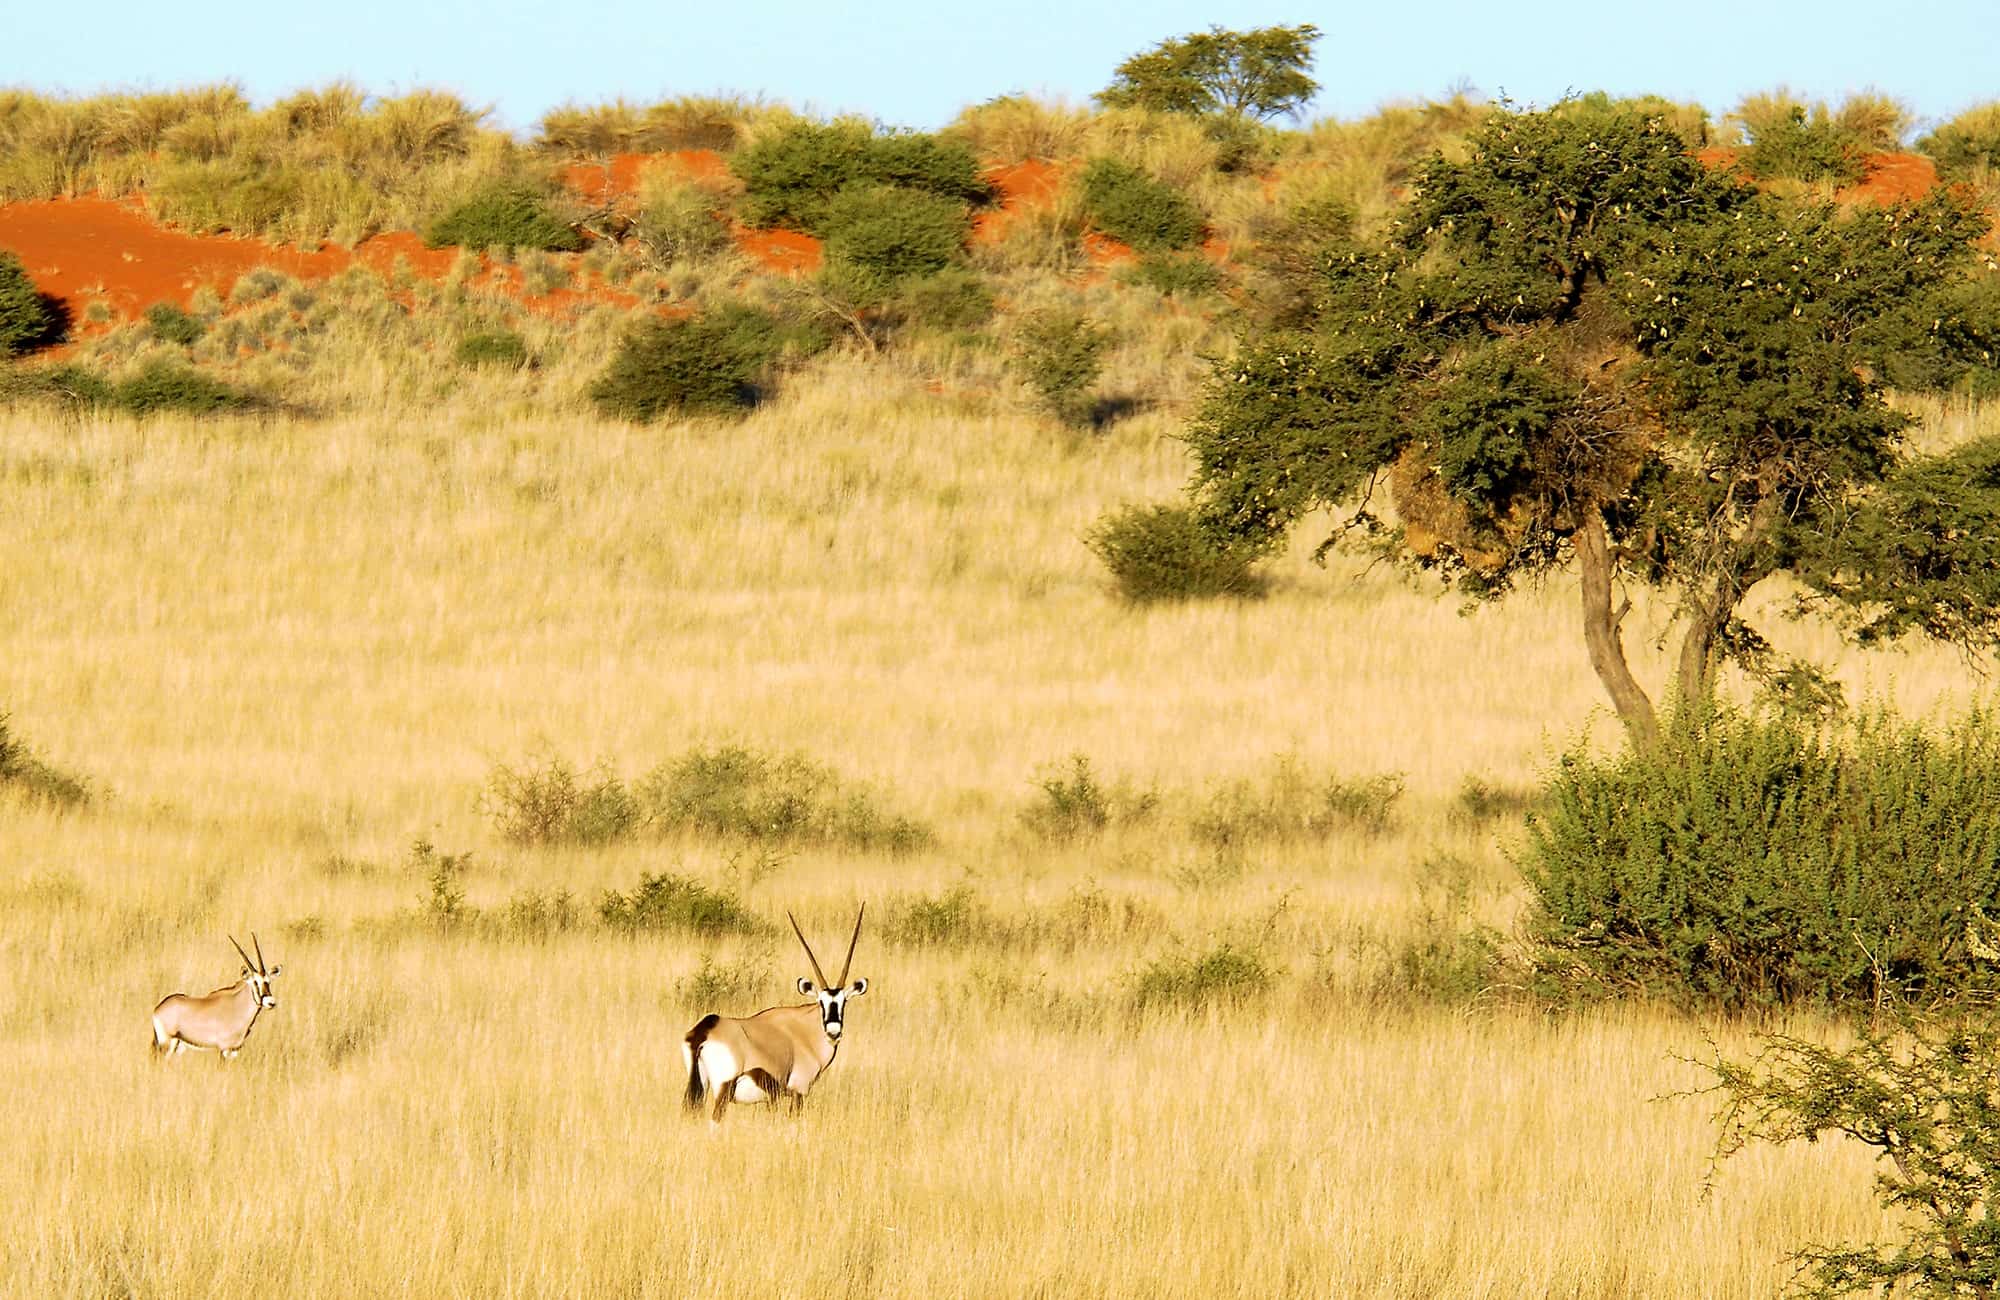 Kalahari Experience Oryx